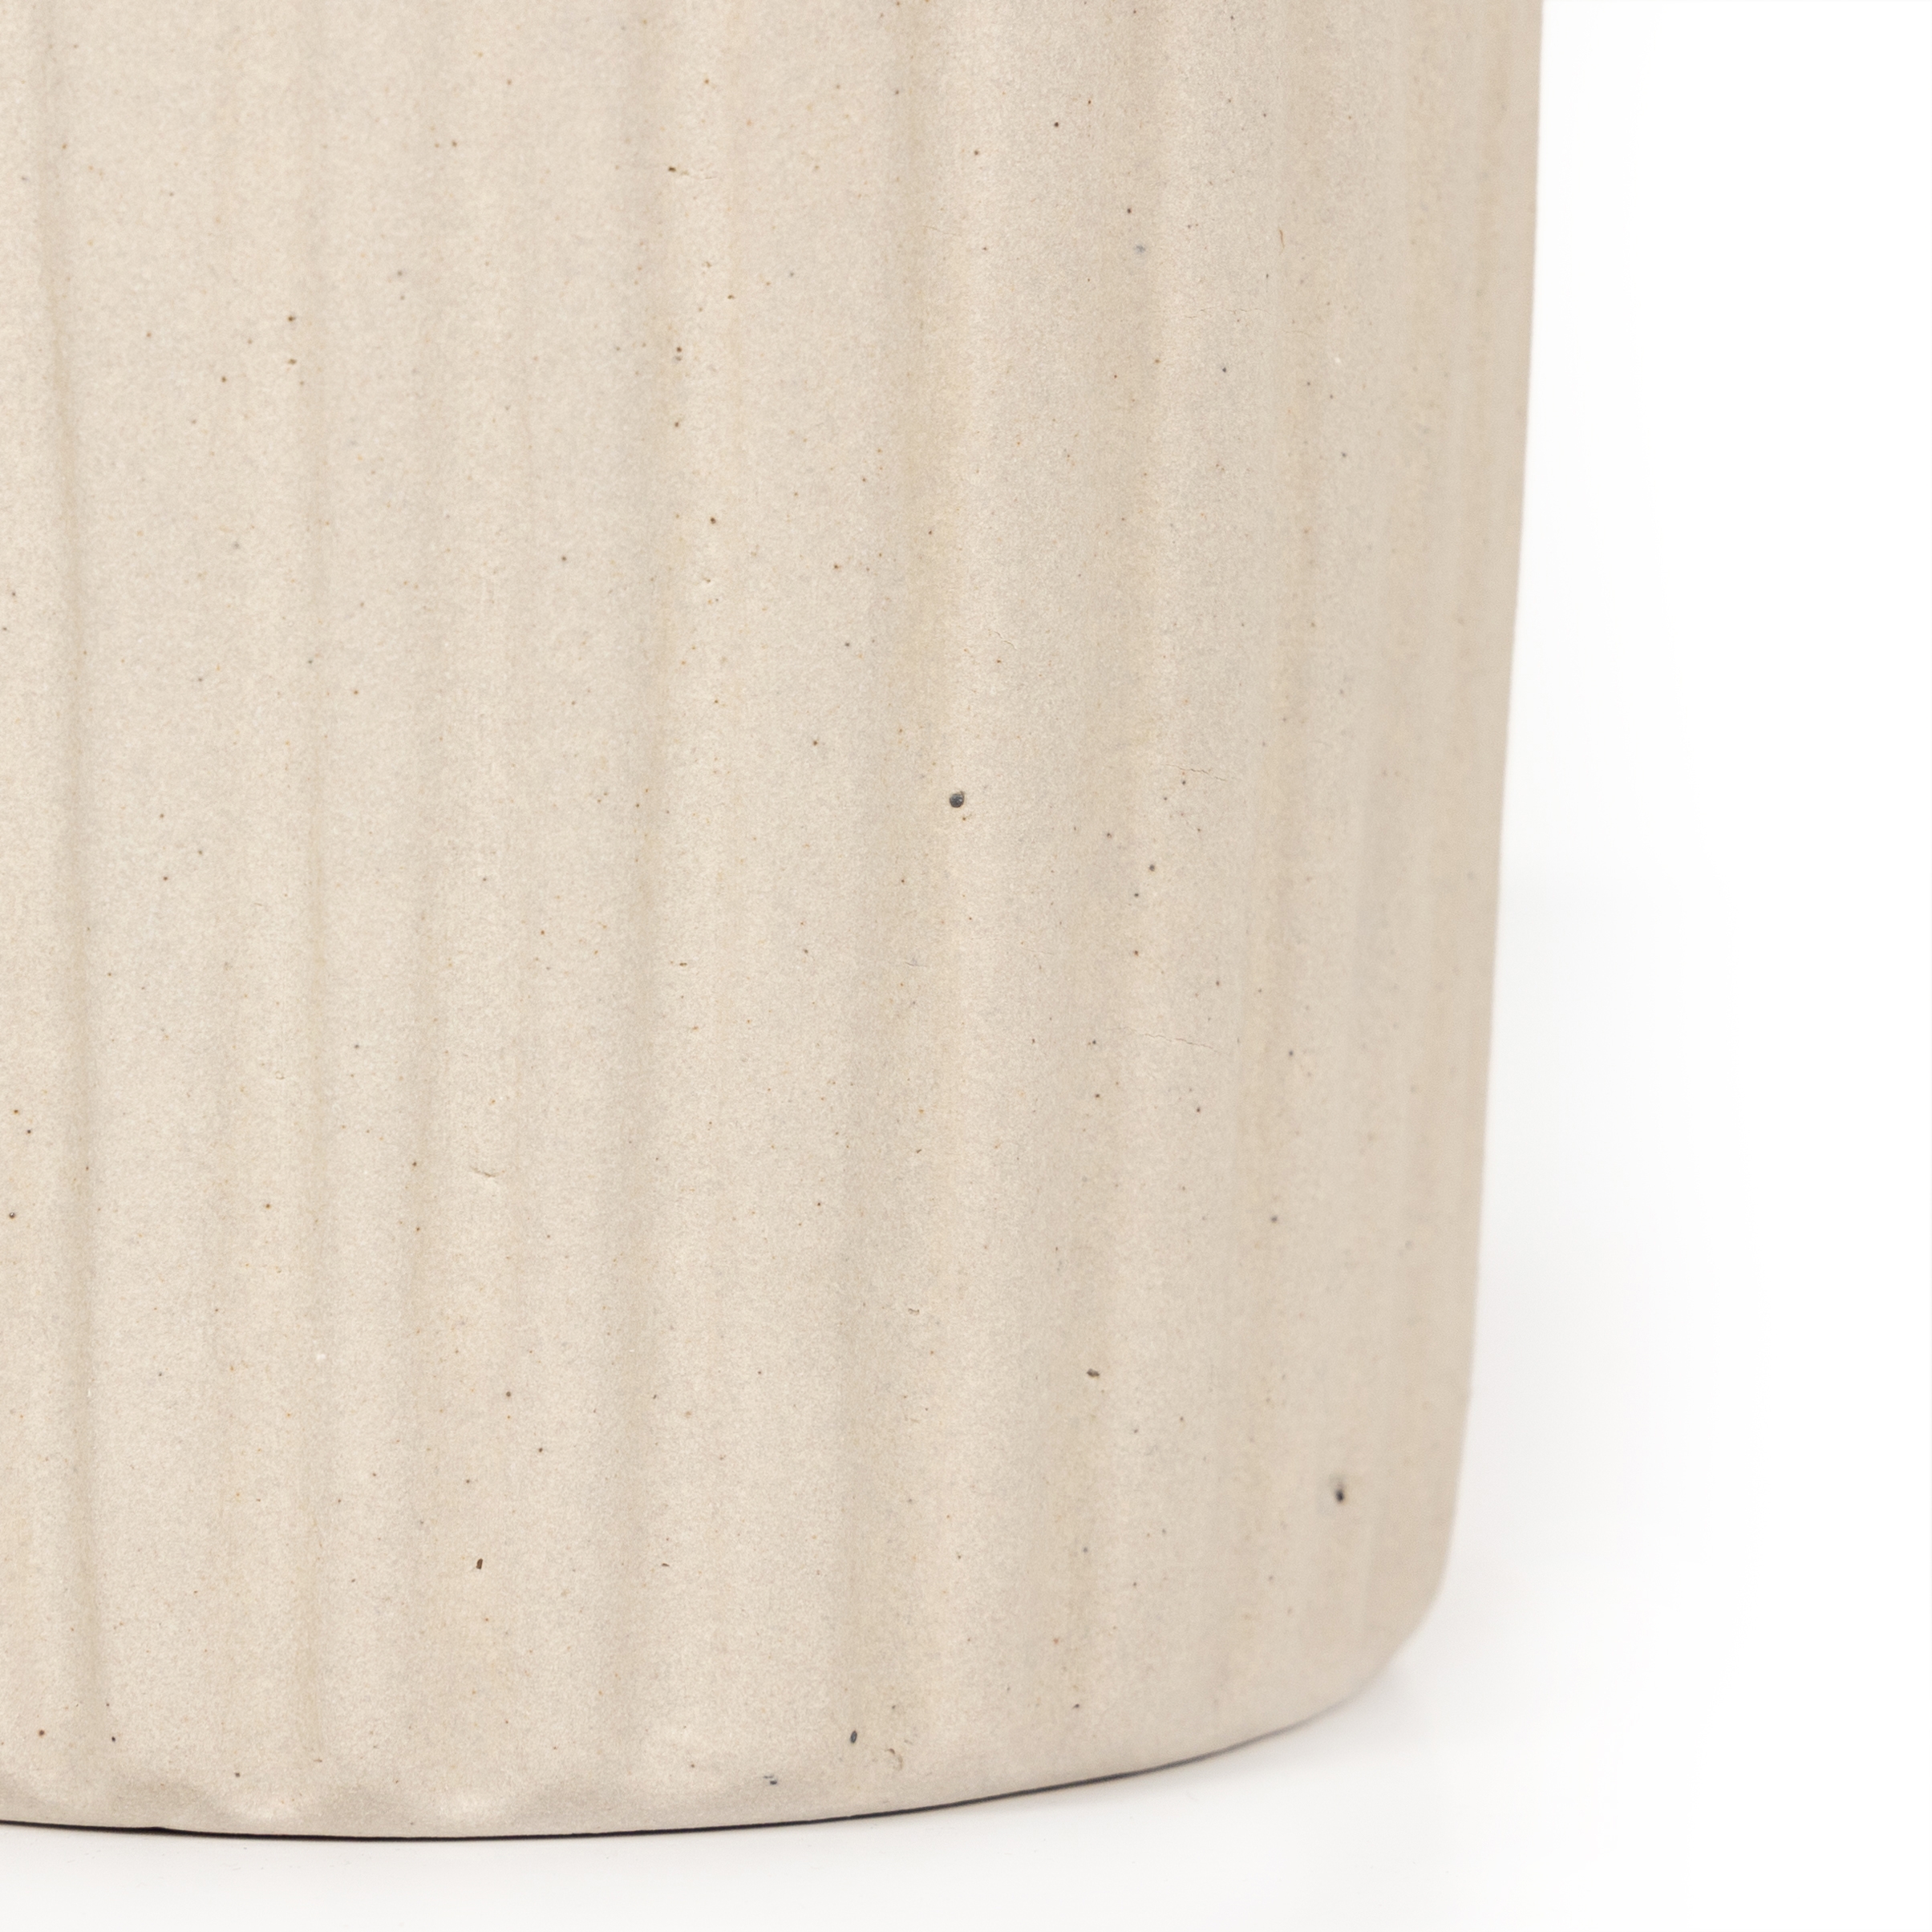 Julio Tall Vase-Cream Matte Ceramic - Image 5